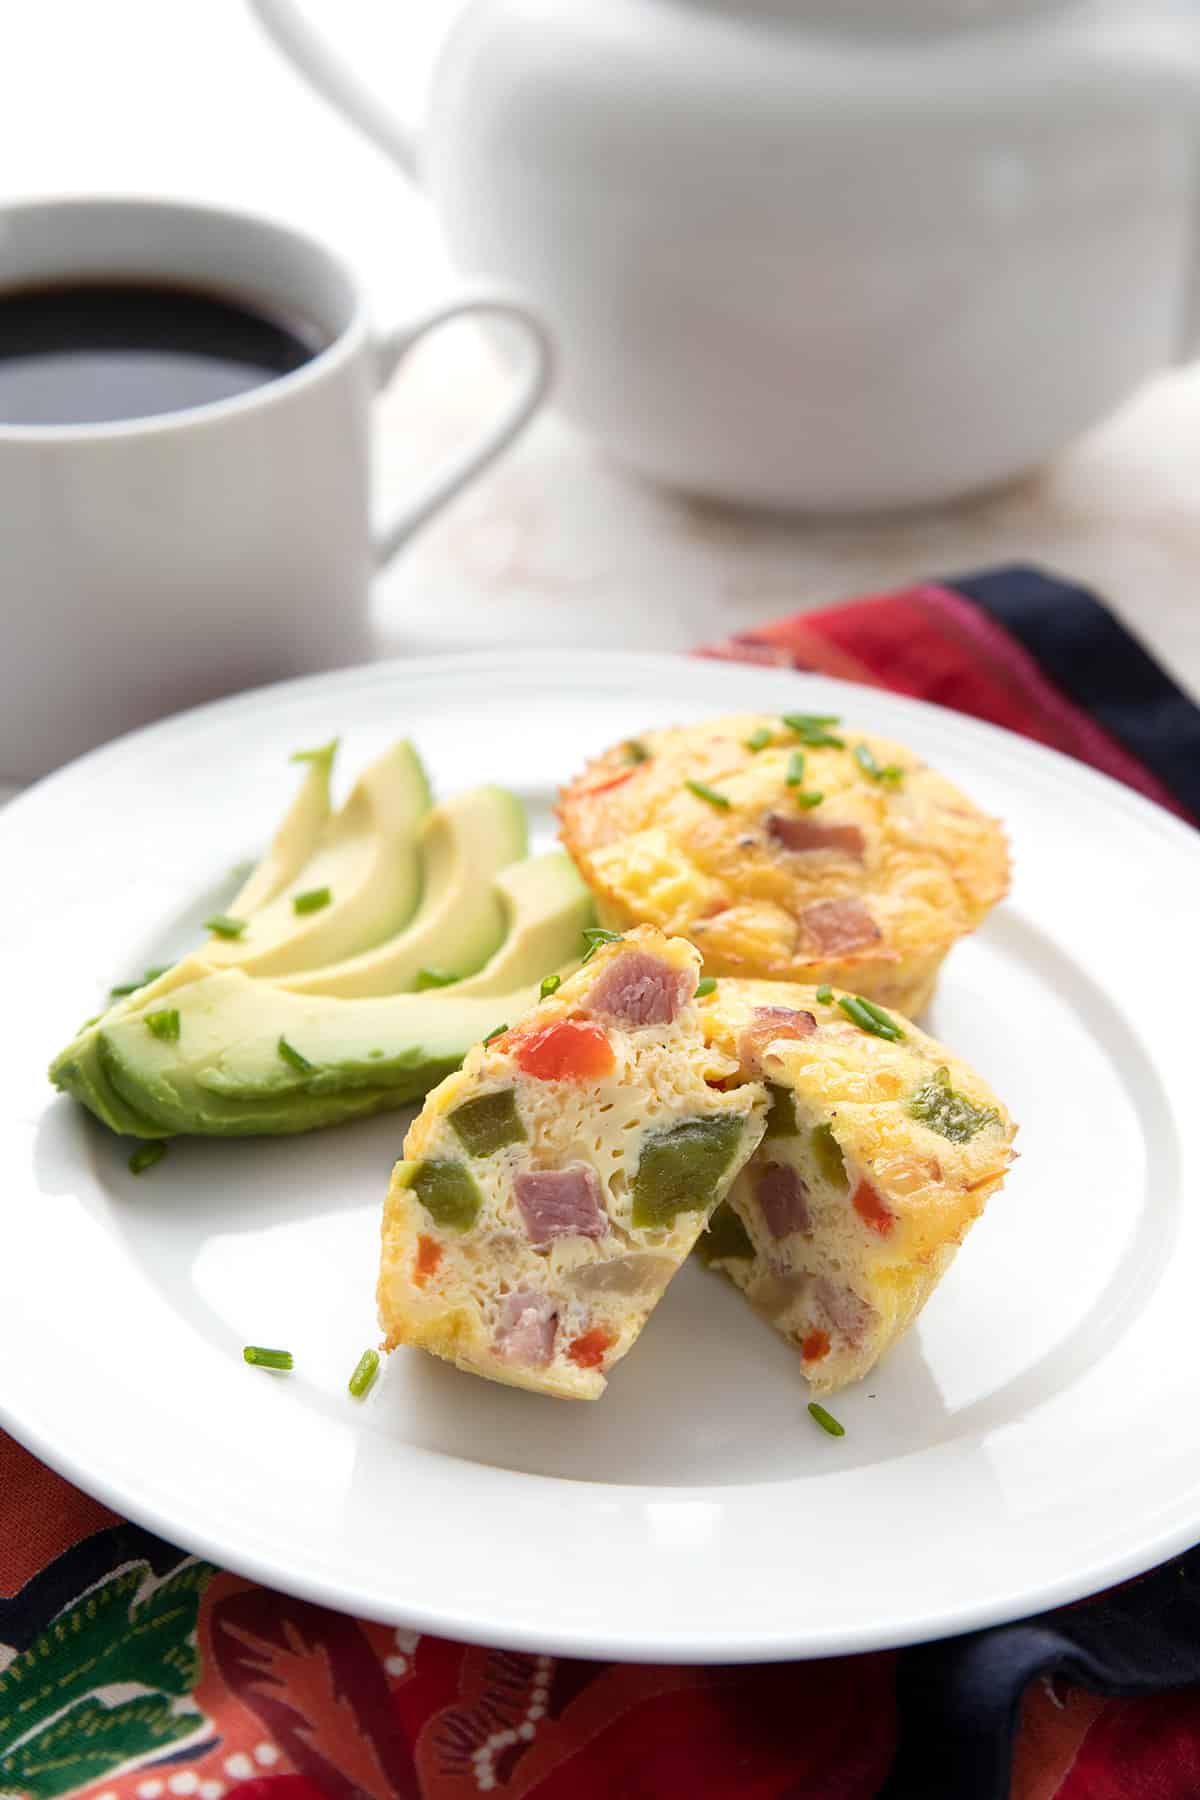 Muffin Tin Denver Omelet - Easy Mini Omelets You'll Love!